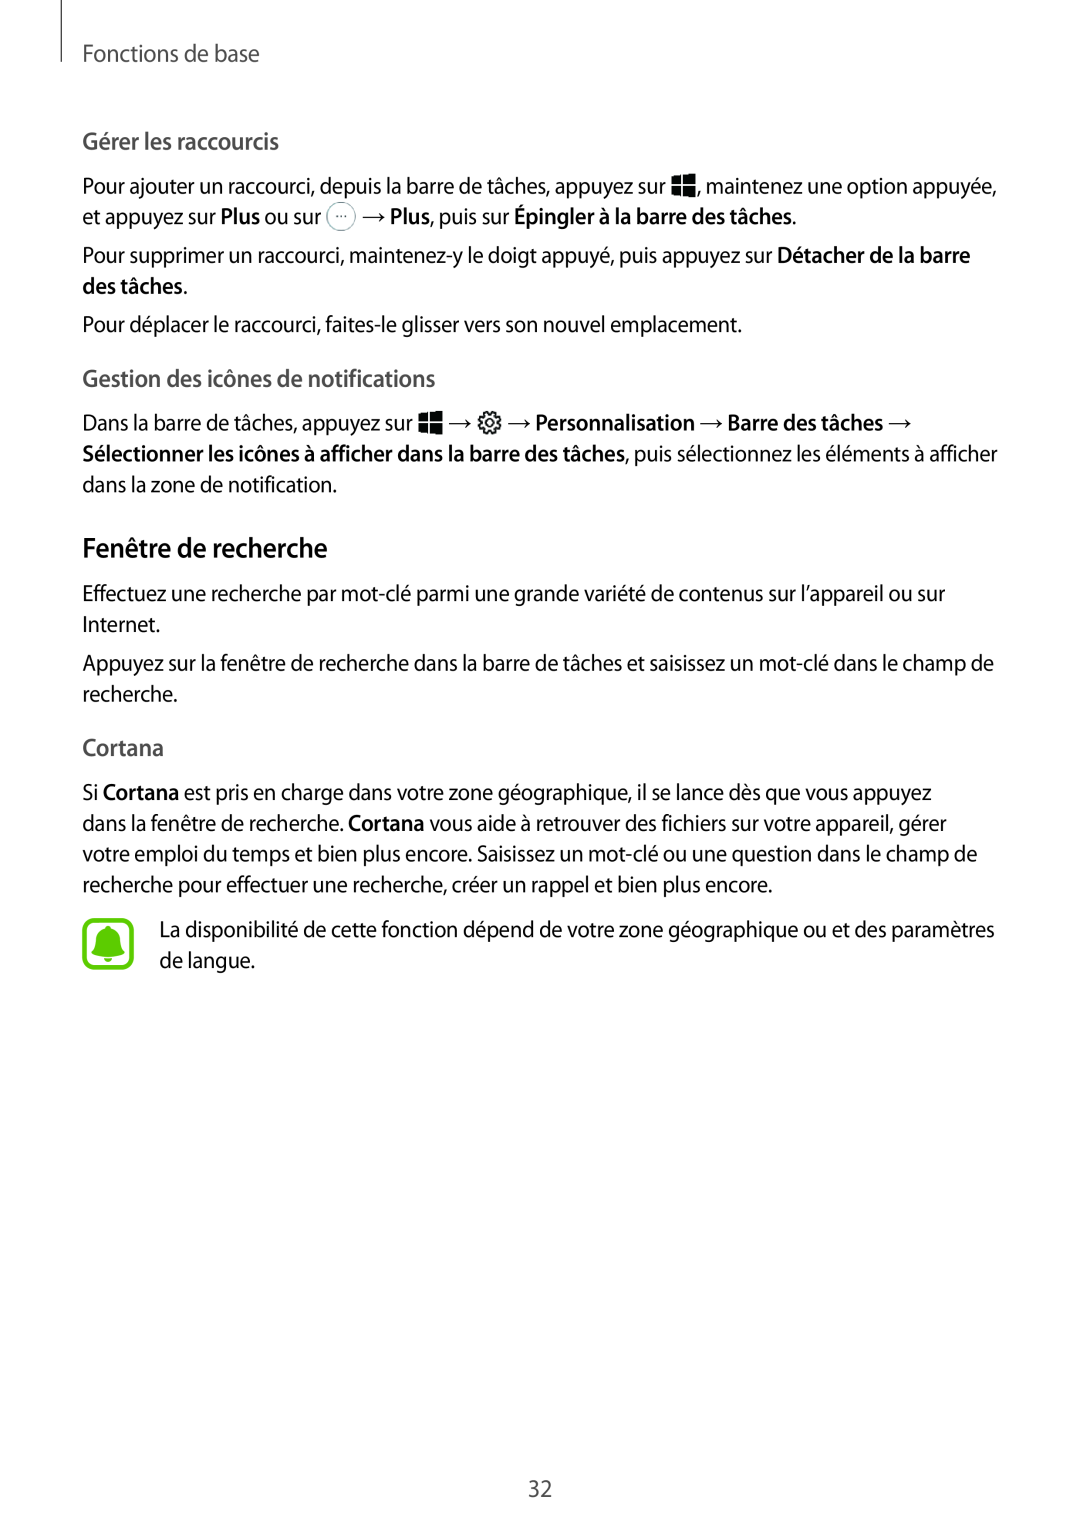 Samsung SM-W620NZKBXEF manual Fenêtre de recherche, Gérer les raccourcis, Gestion des icônes de notifications, Cortana 